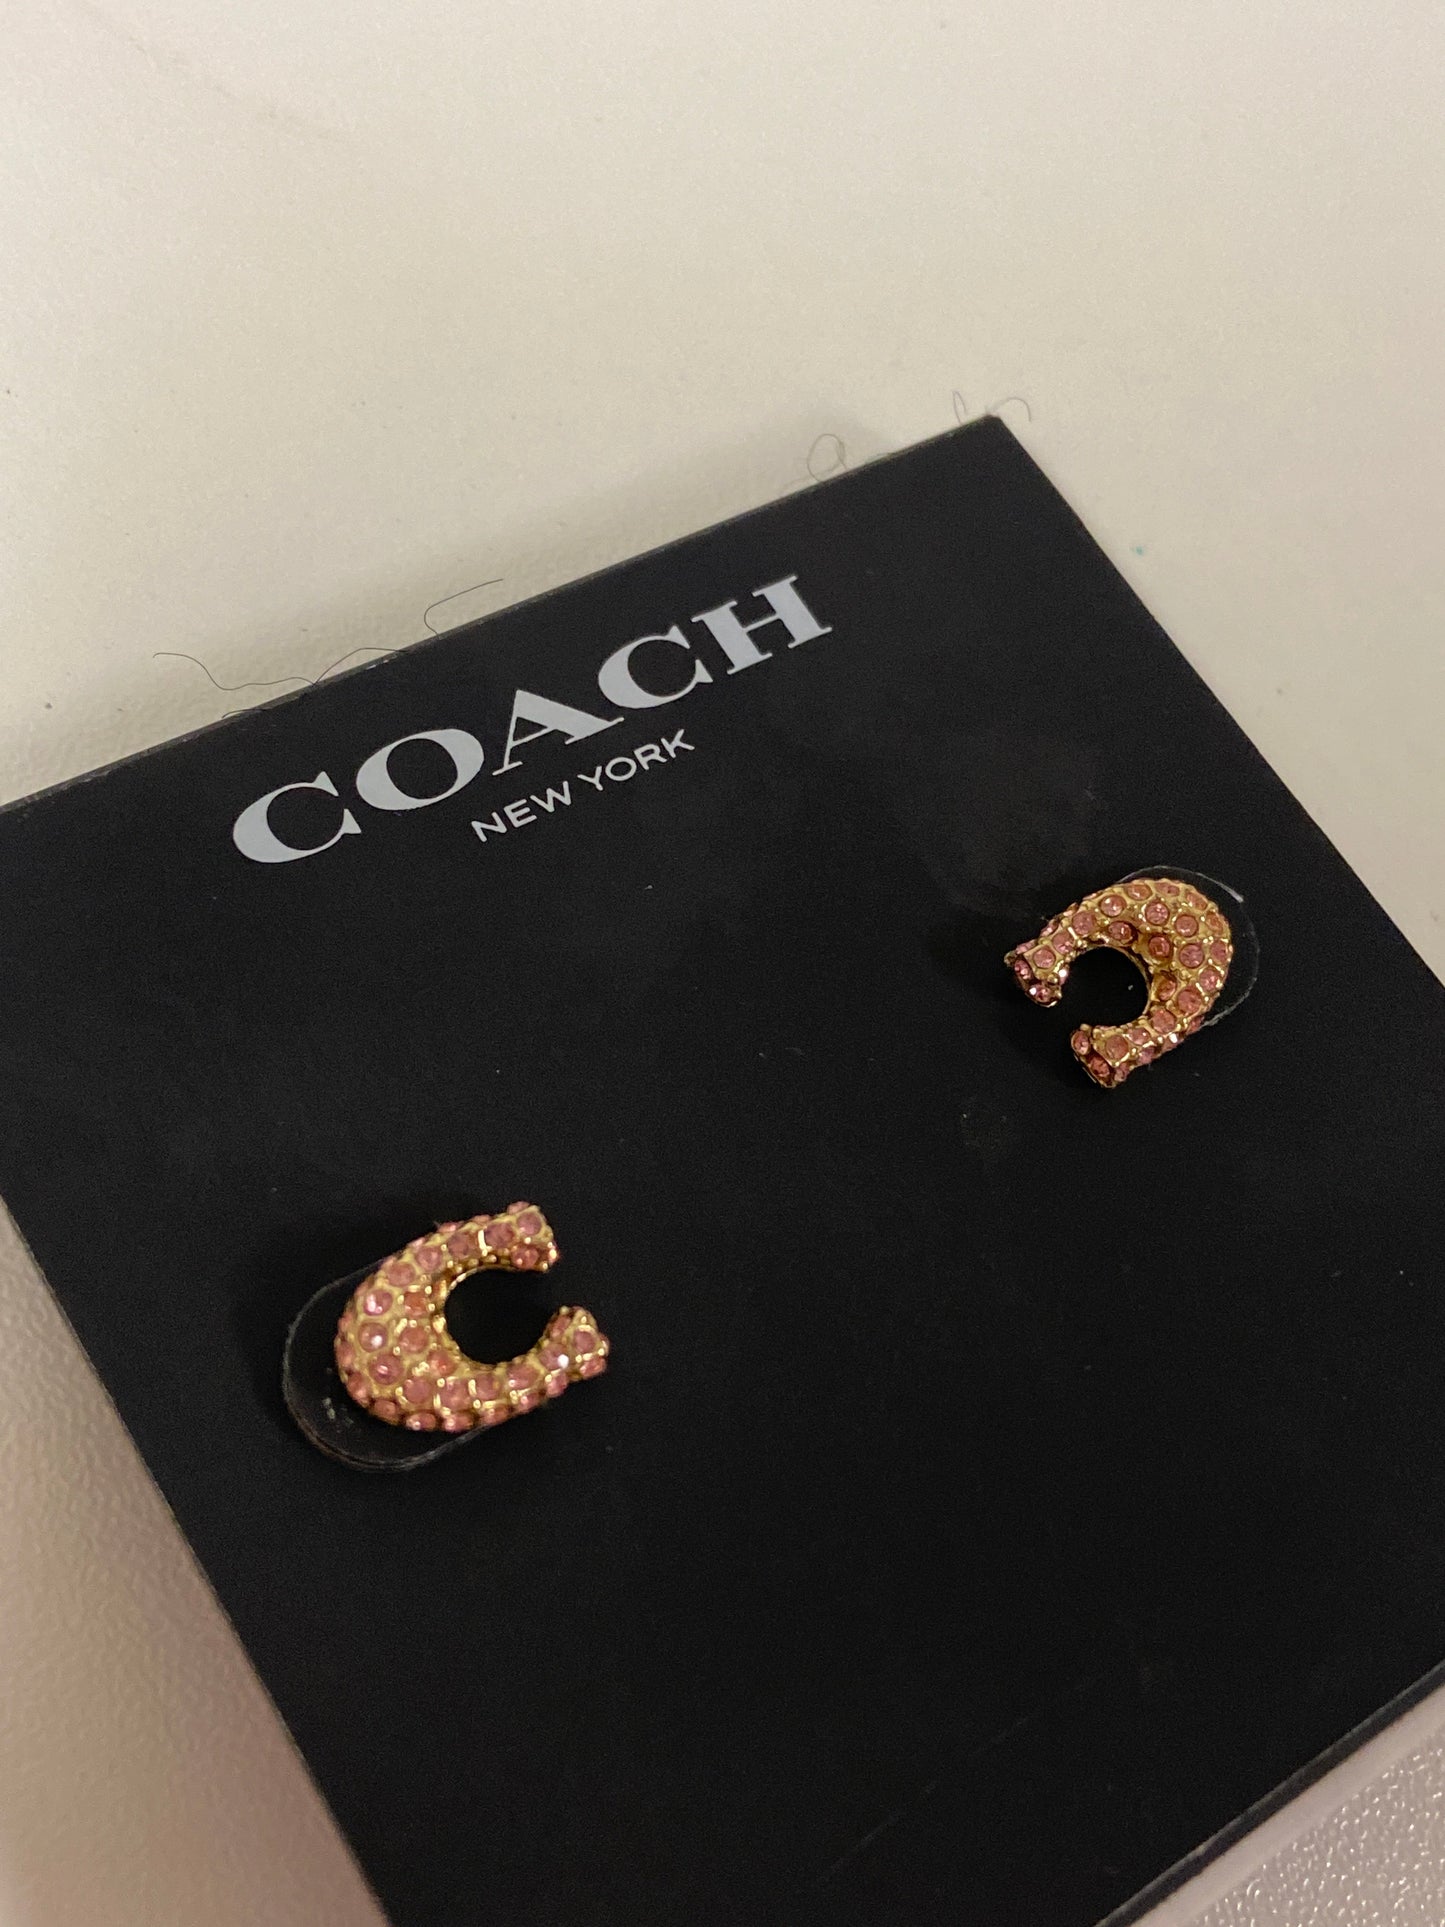 Earrings Designer Coach, Size 1